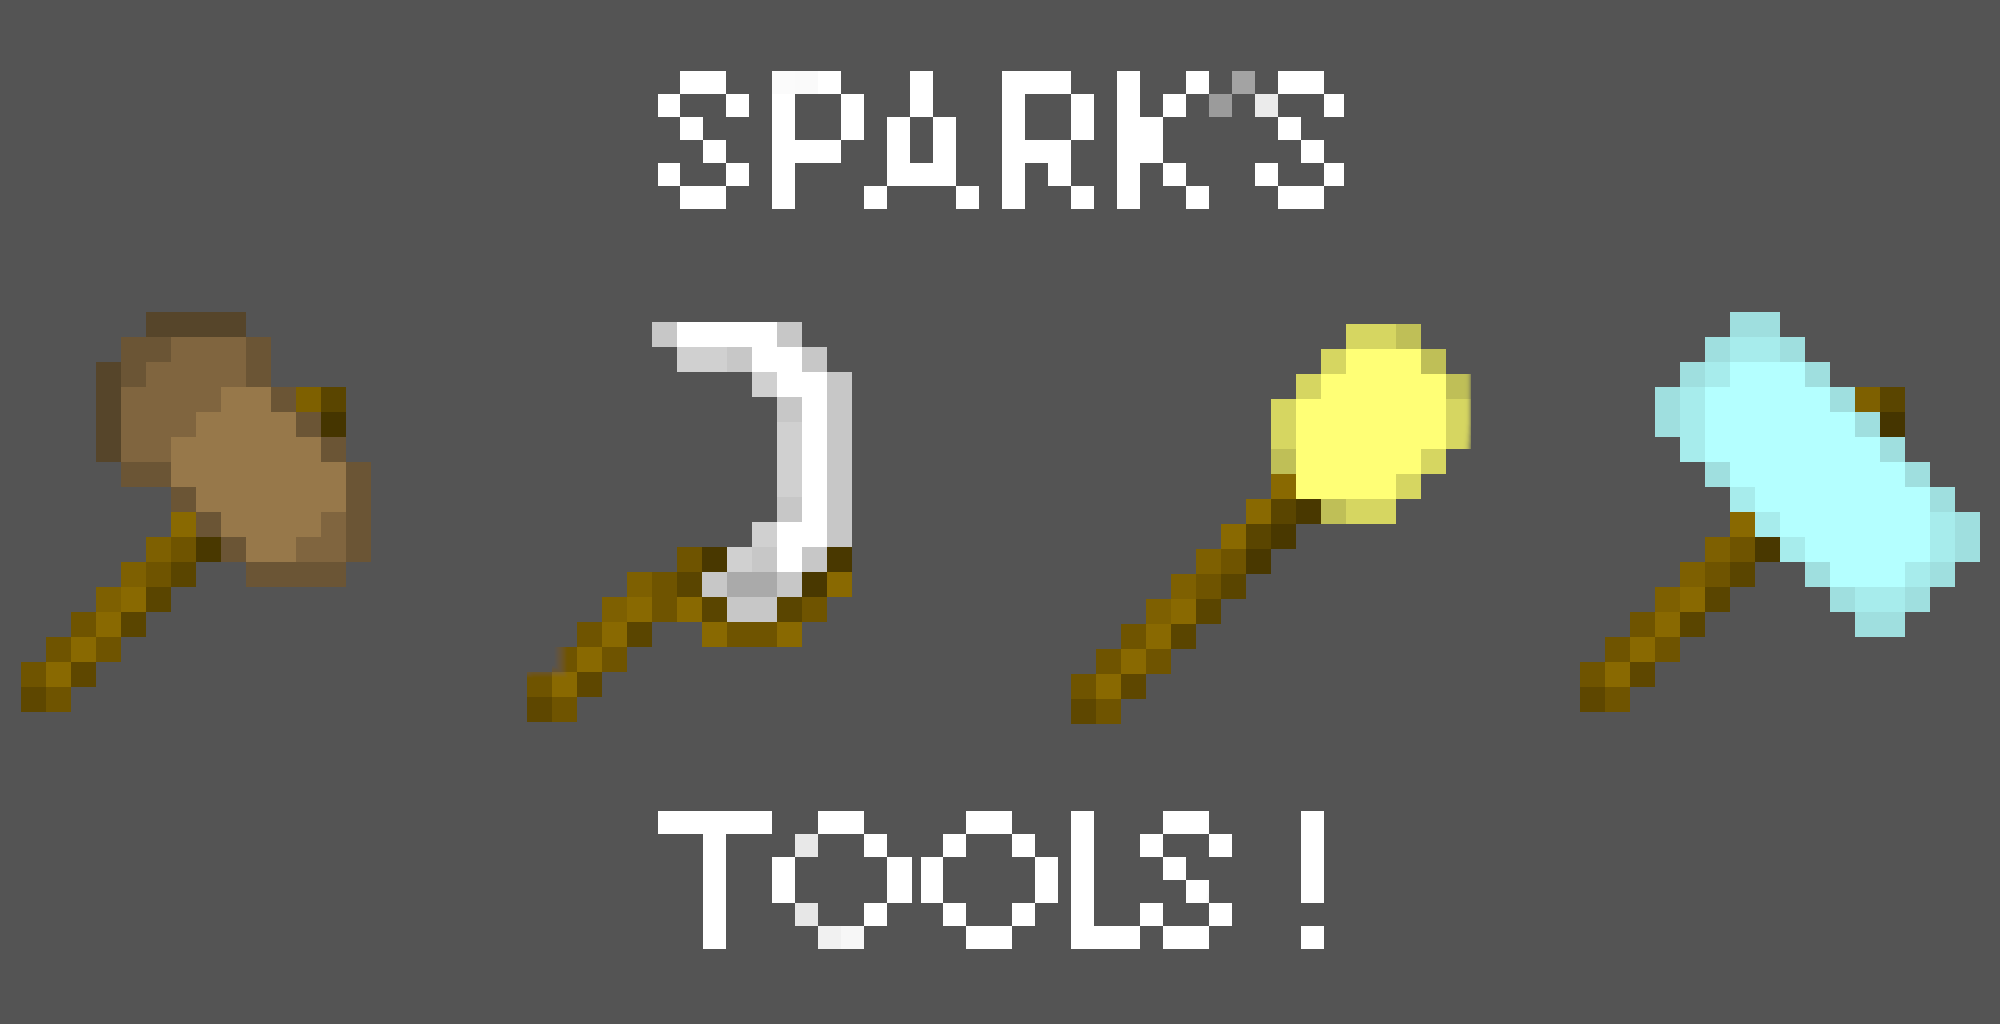 Sparks Hammers 1.12.2. Sparks Hammers 1.12.2 улучшения. Инструменты из МАЙНКРАФТА. Sparks Hammers 1.12.2 крафты. Spark tools